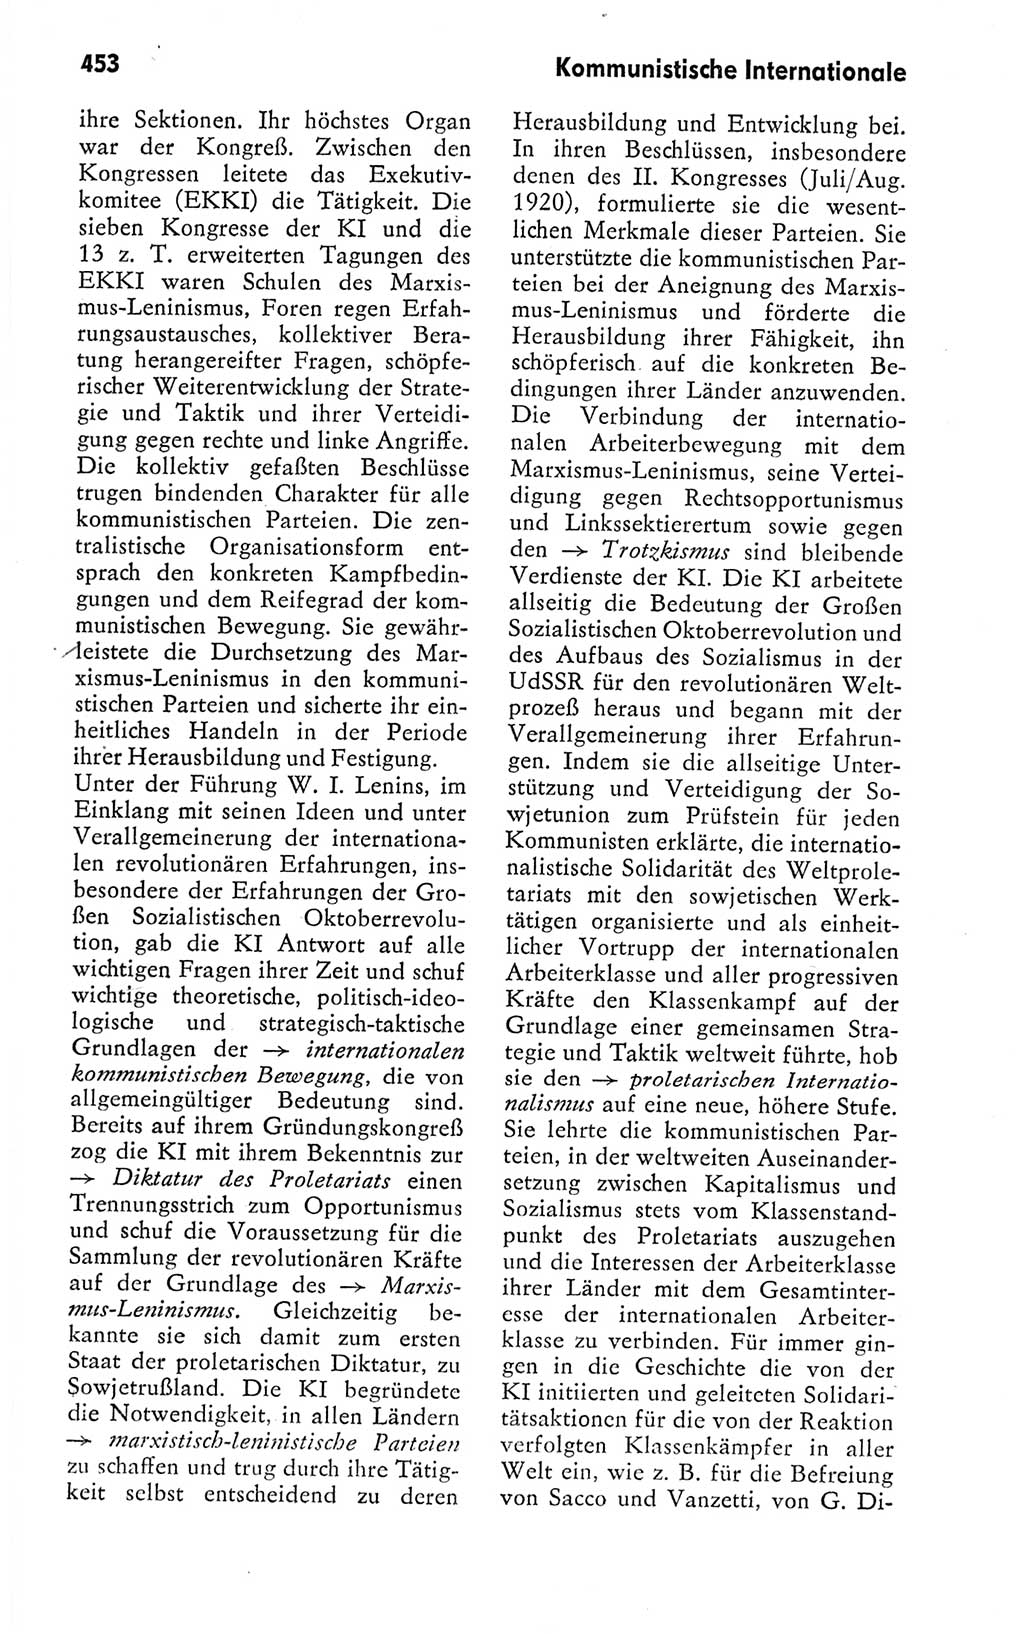 Kleines politisches Wörterbuch [Deutsche Demokratische Republik (DDR)] 1978, Seite 453 (Kl. pol. Wb. DDR 1978, S. 453)